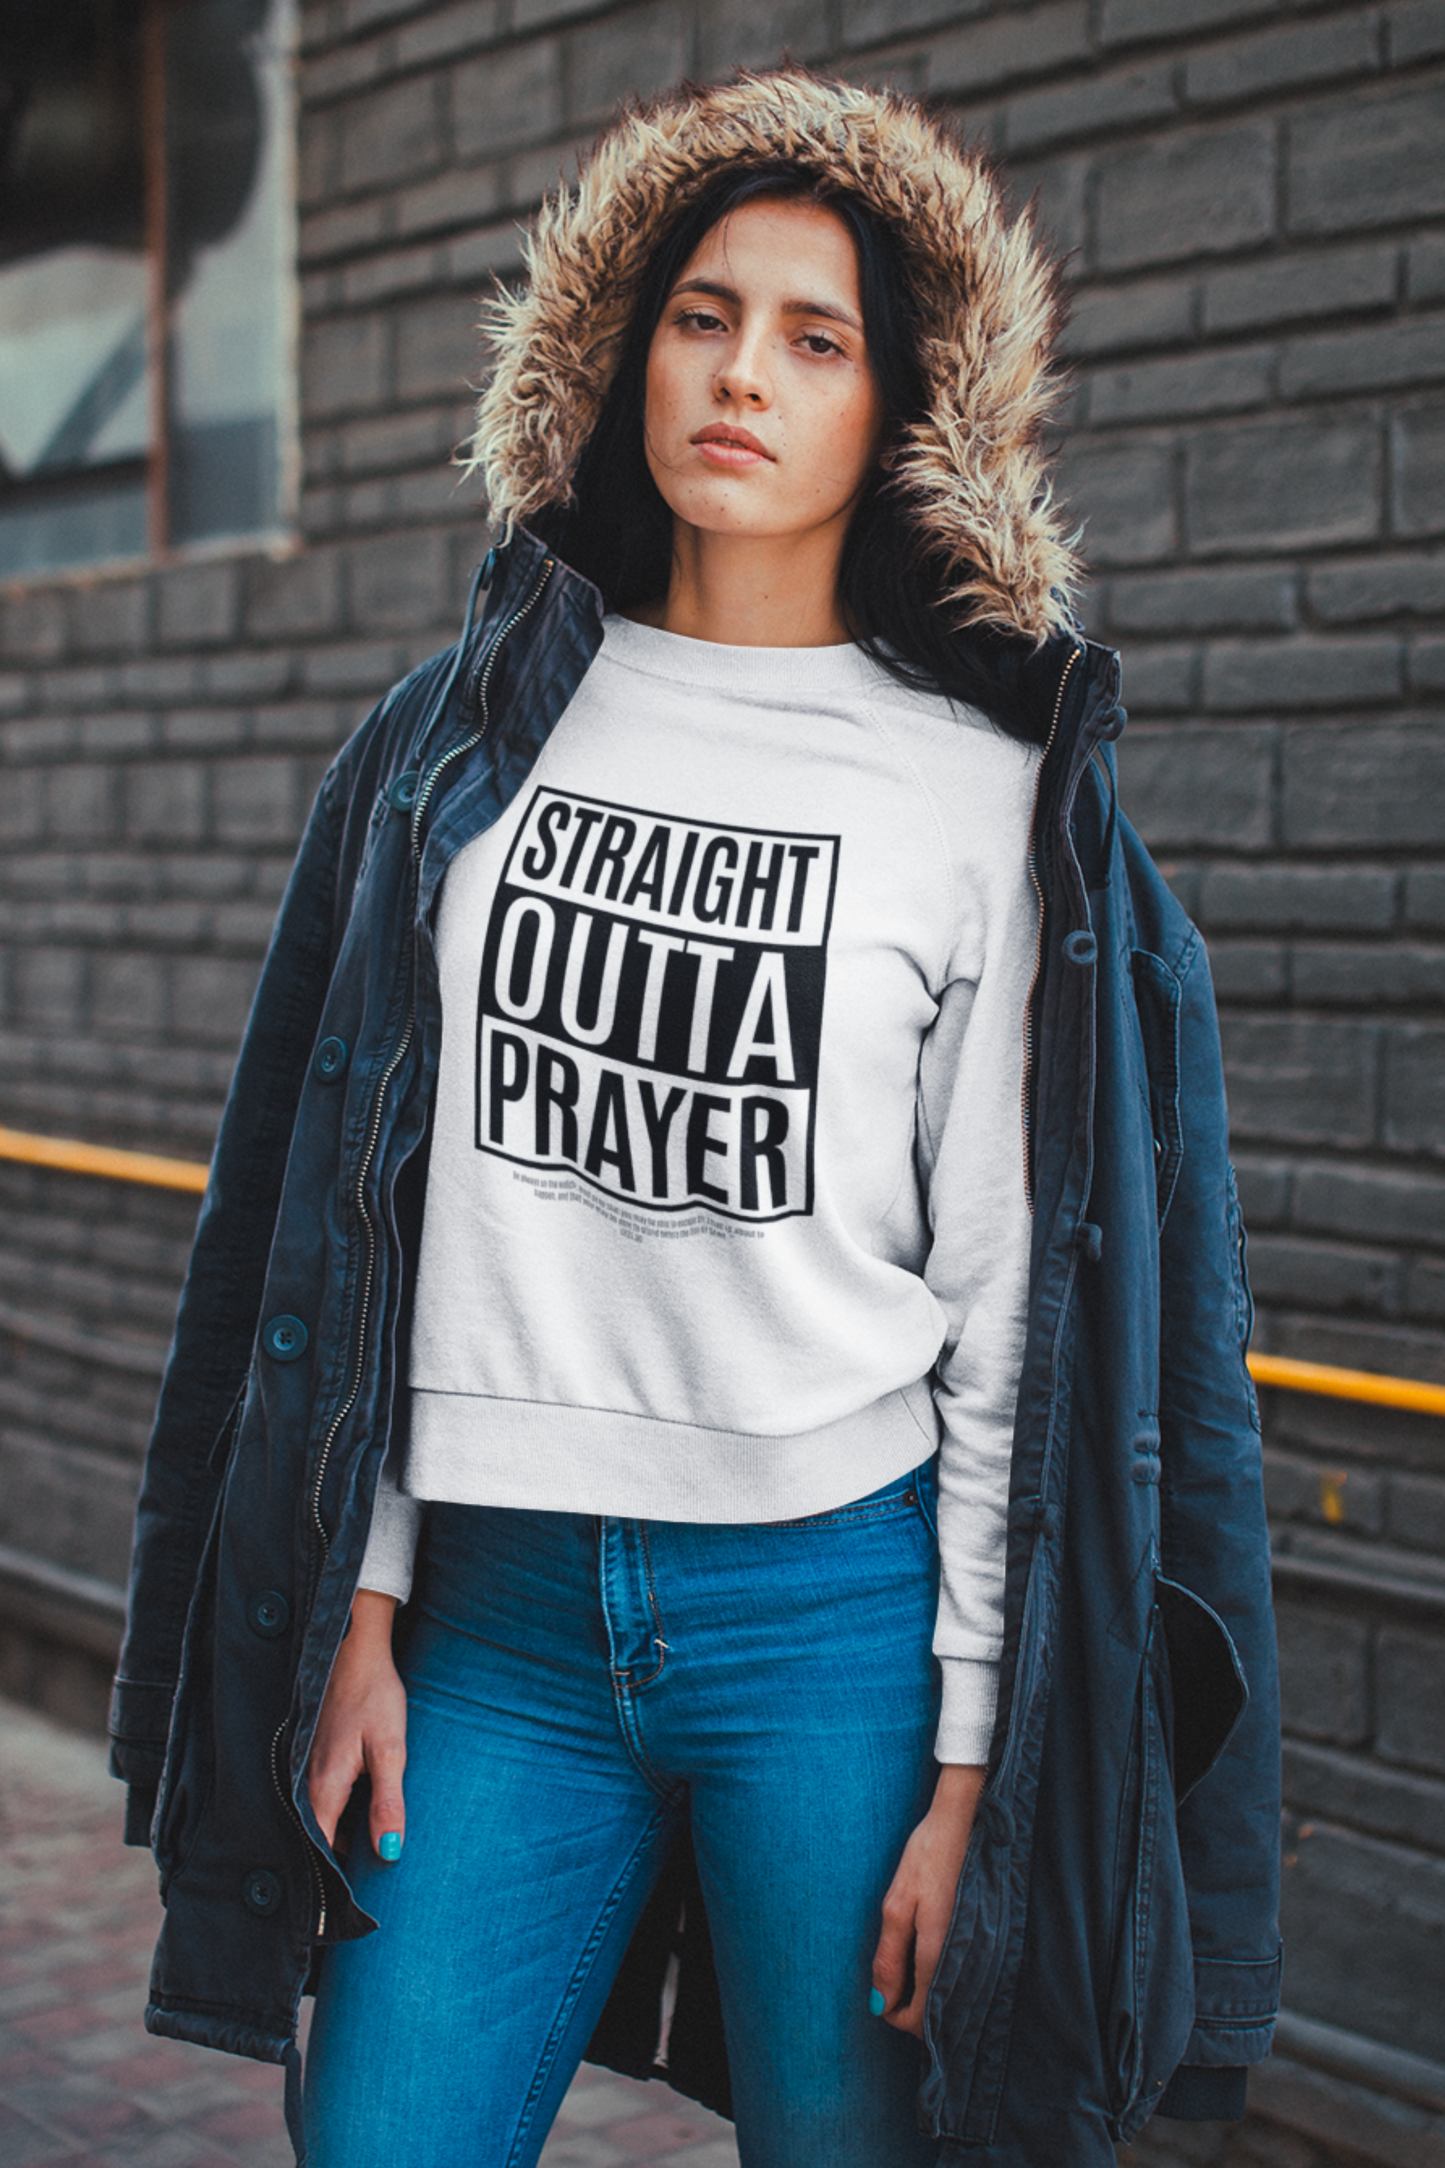 Straight outta Prayer. Sweatshirt.